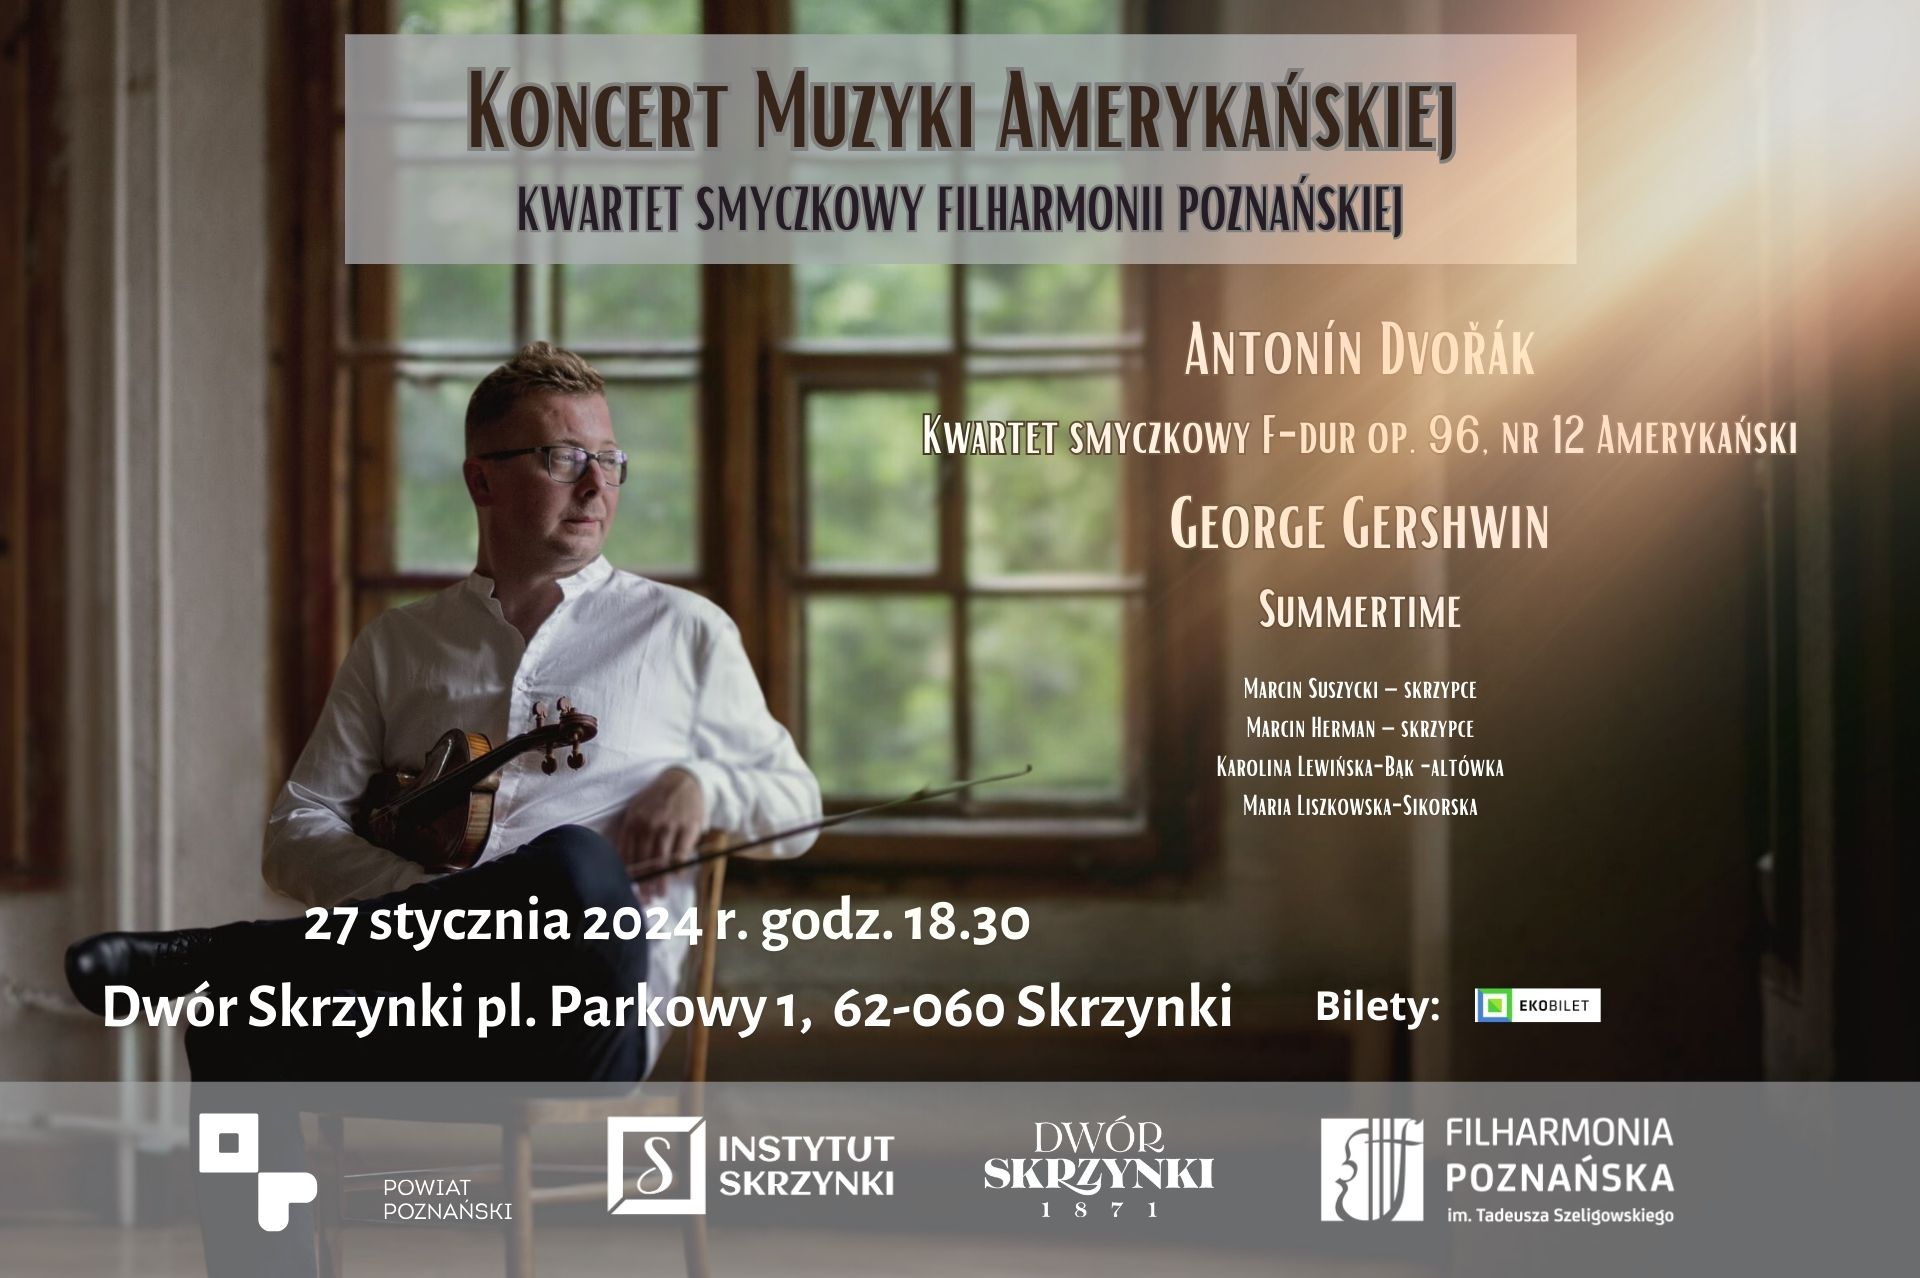 You are currently viewing Koncert Muzyki Amerykańskiej w Dworze Skrzynki.